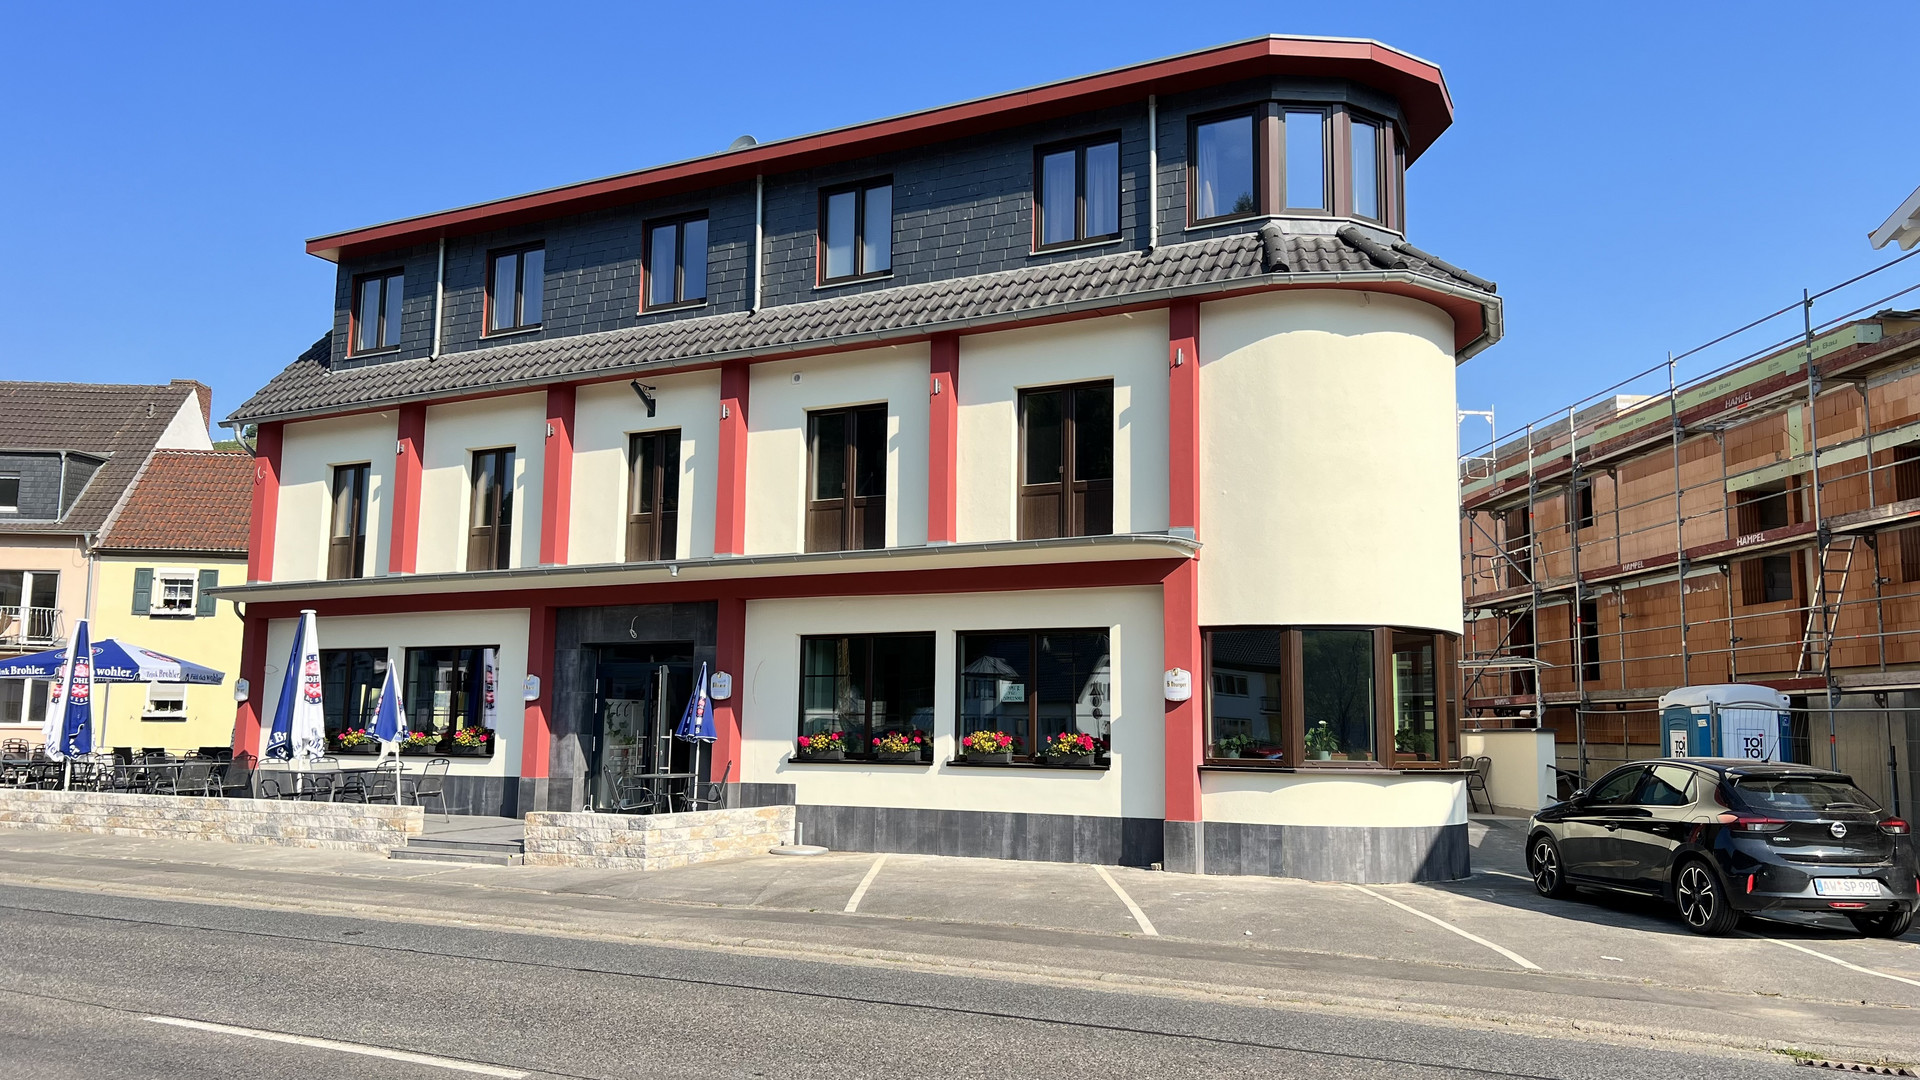 15. Juni 2023: Das Hotel Rebstock in Dernau nach dem vollendeten Umbau beziehungsweise nach der veränderten Renovierung.